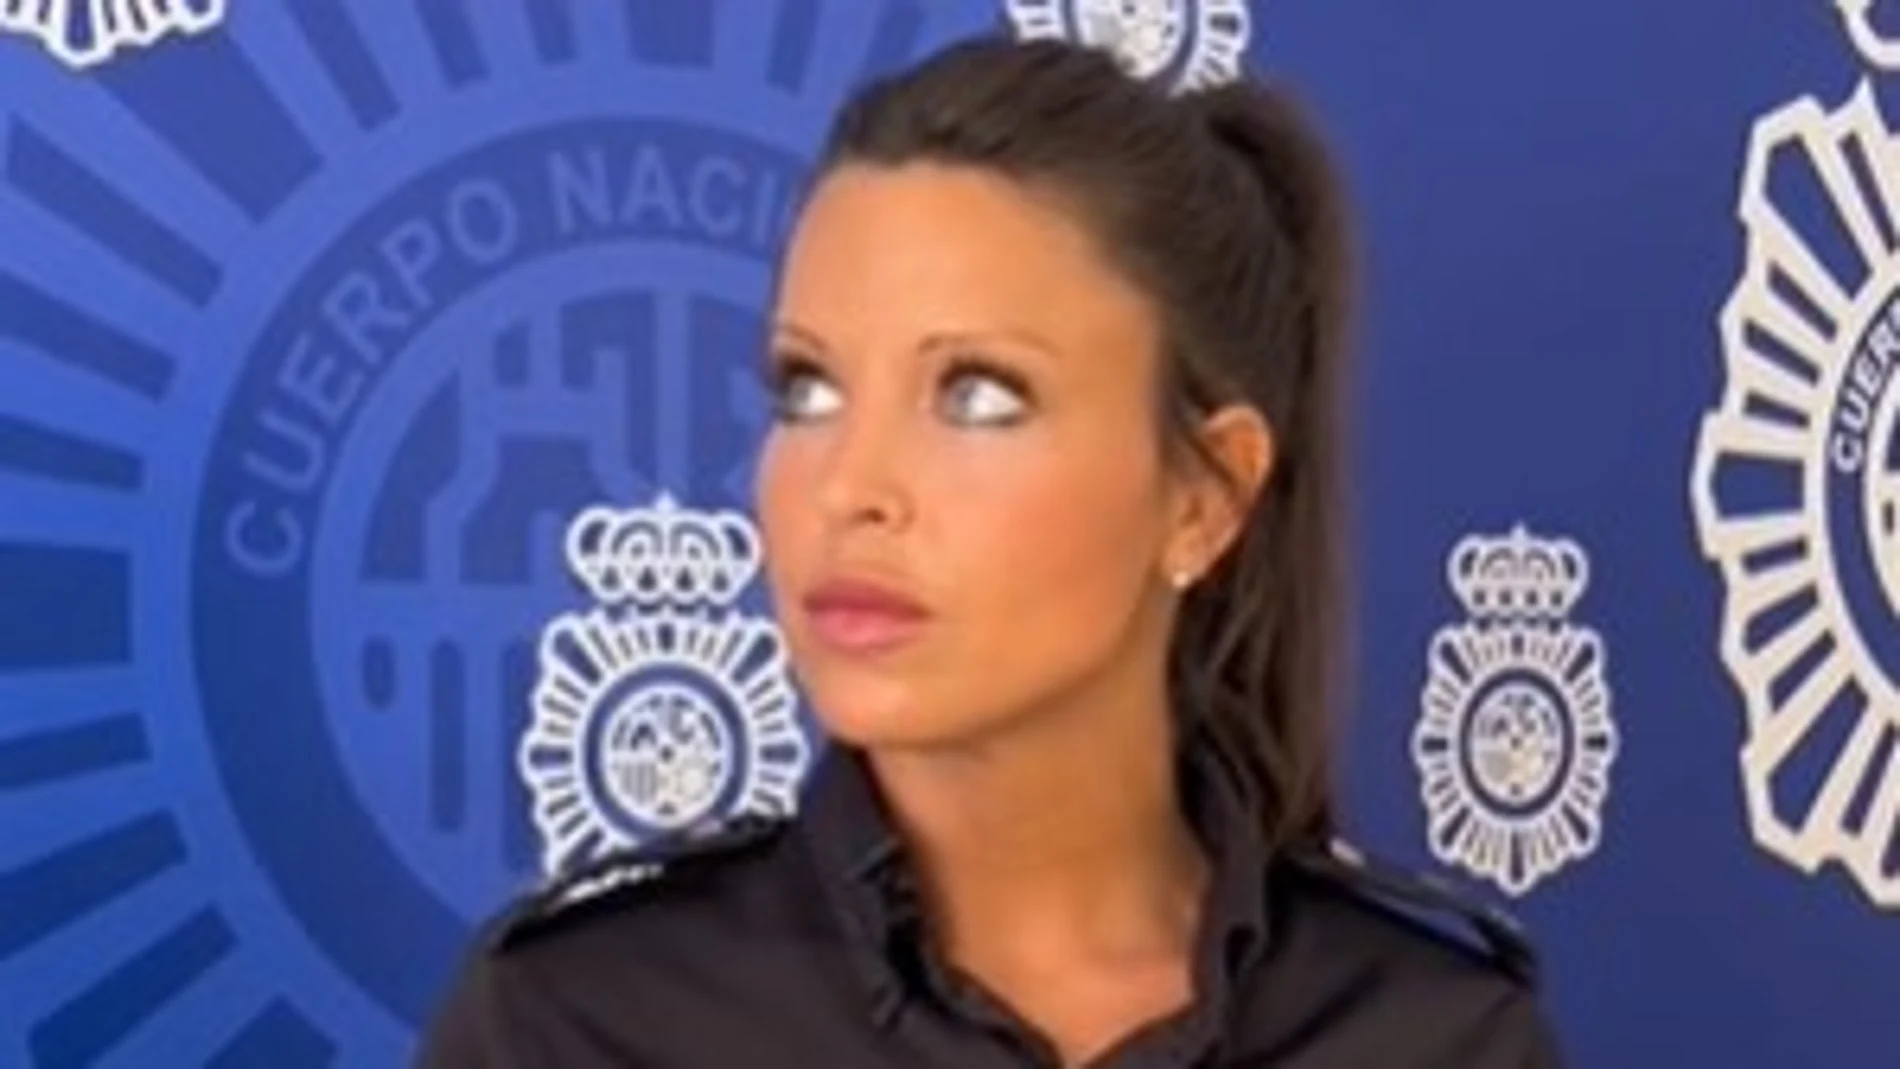 Ana es una agente de Policía Nacional que ha sido criticada por su aspecto físico en las redes sociales